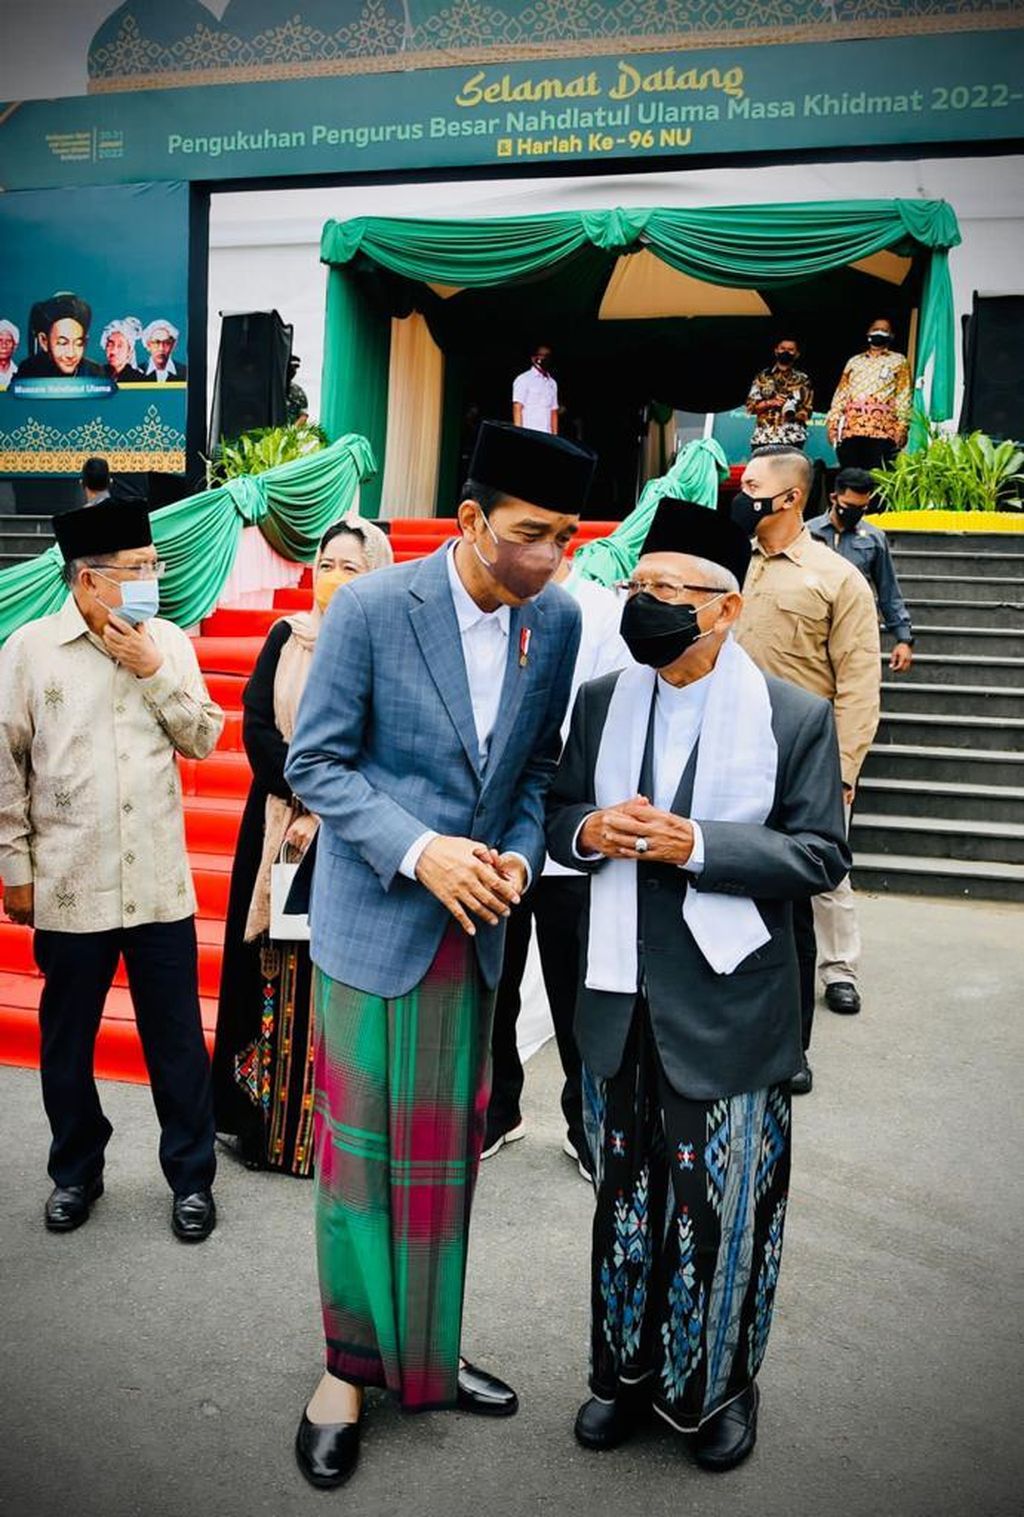 Presiden Joko Widodo dan Wakil Presiden Maruf Amin saat menghadiri acara pengukuhan Pengurus Besar Nahdlatul Ulama (PBNU) Masa Khidmat 2022-2027 dan Hari Ulang Tahun Ke-96 NU yang digelar di Balikpapan Sport and Convention Center, Kota Balikpapan, Kalimantan Timur, Senin (31/1/2021).